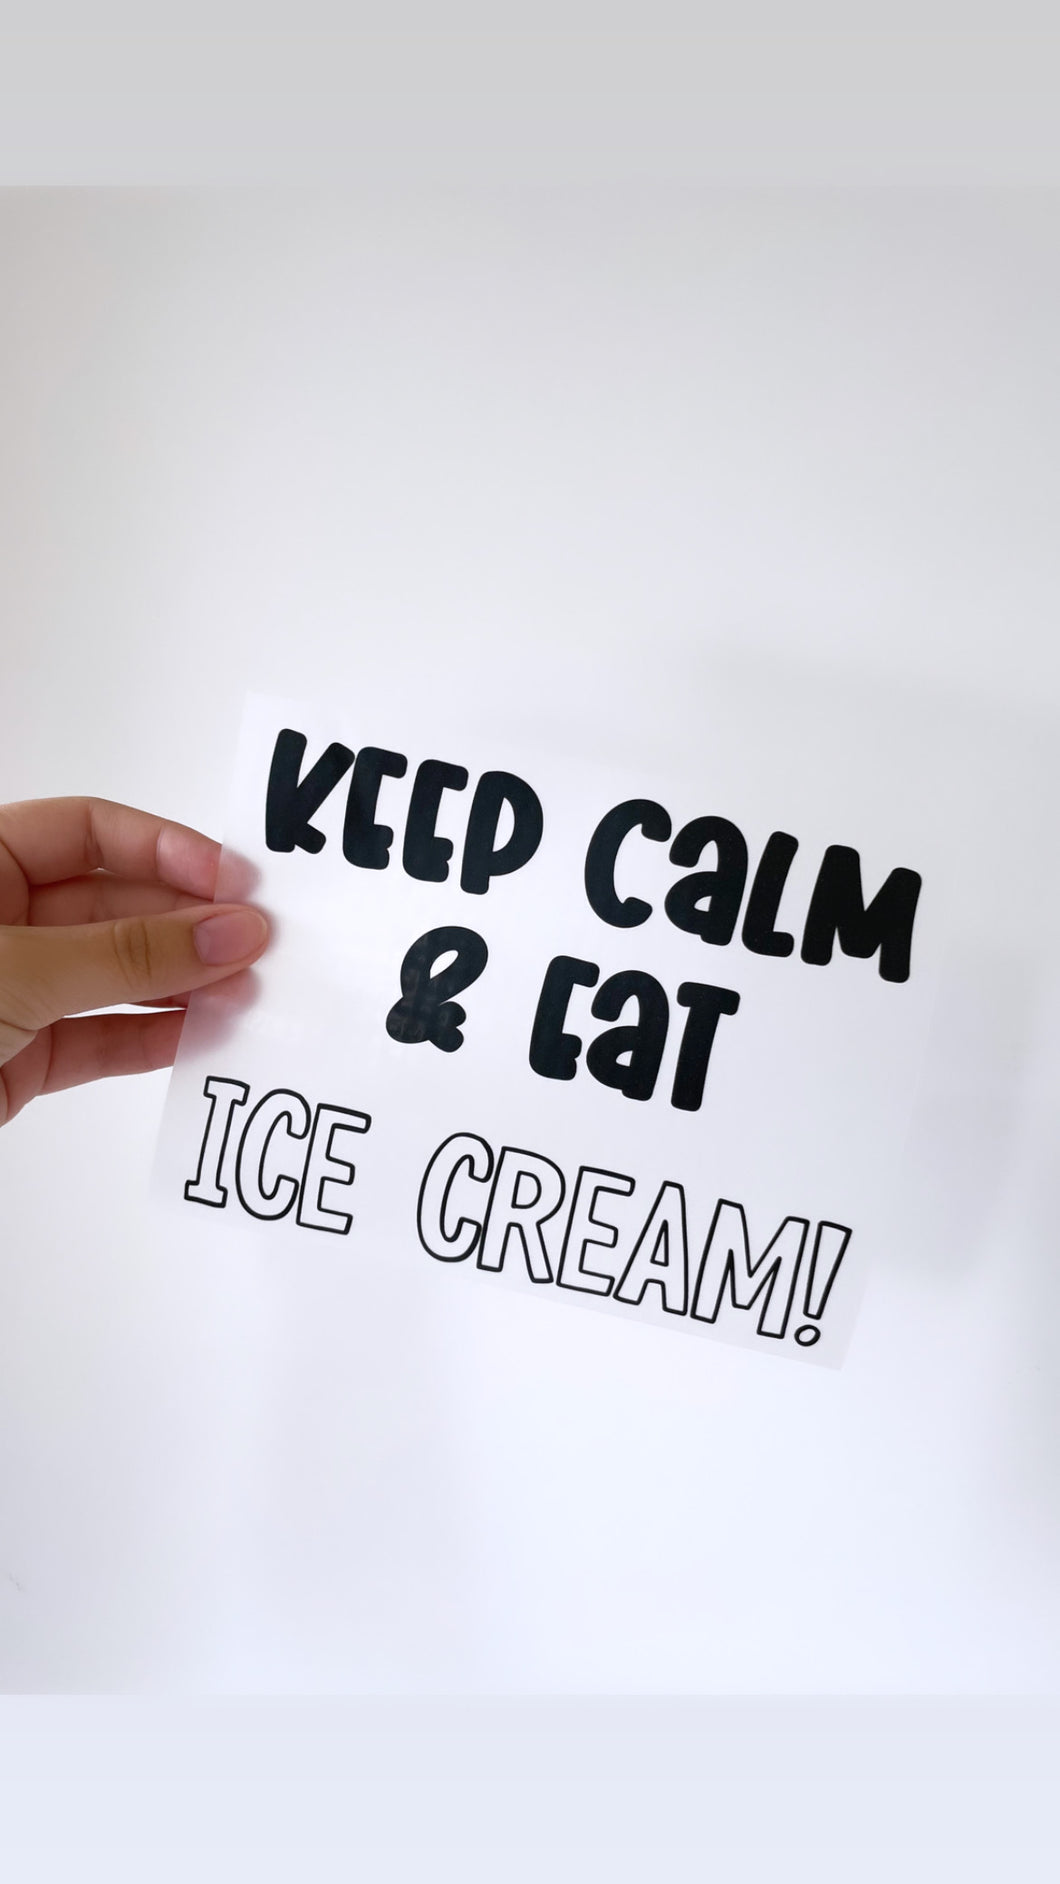 Keep calm & eat ice cream - Bügelbild, groß/maxi